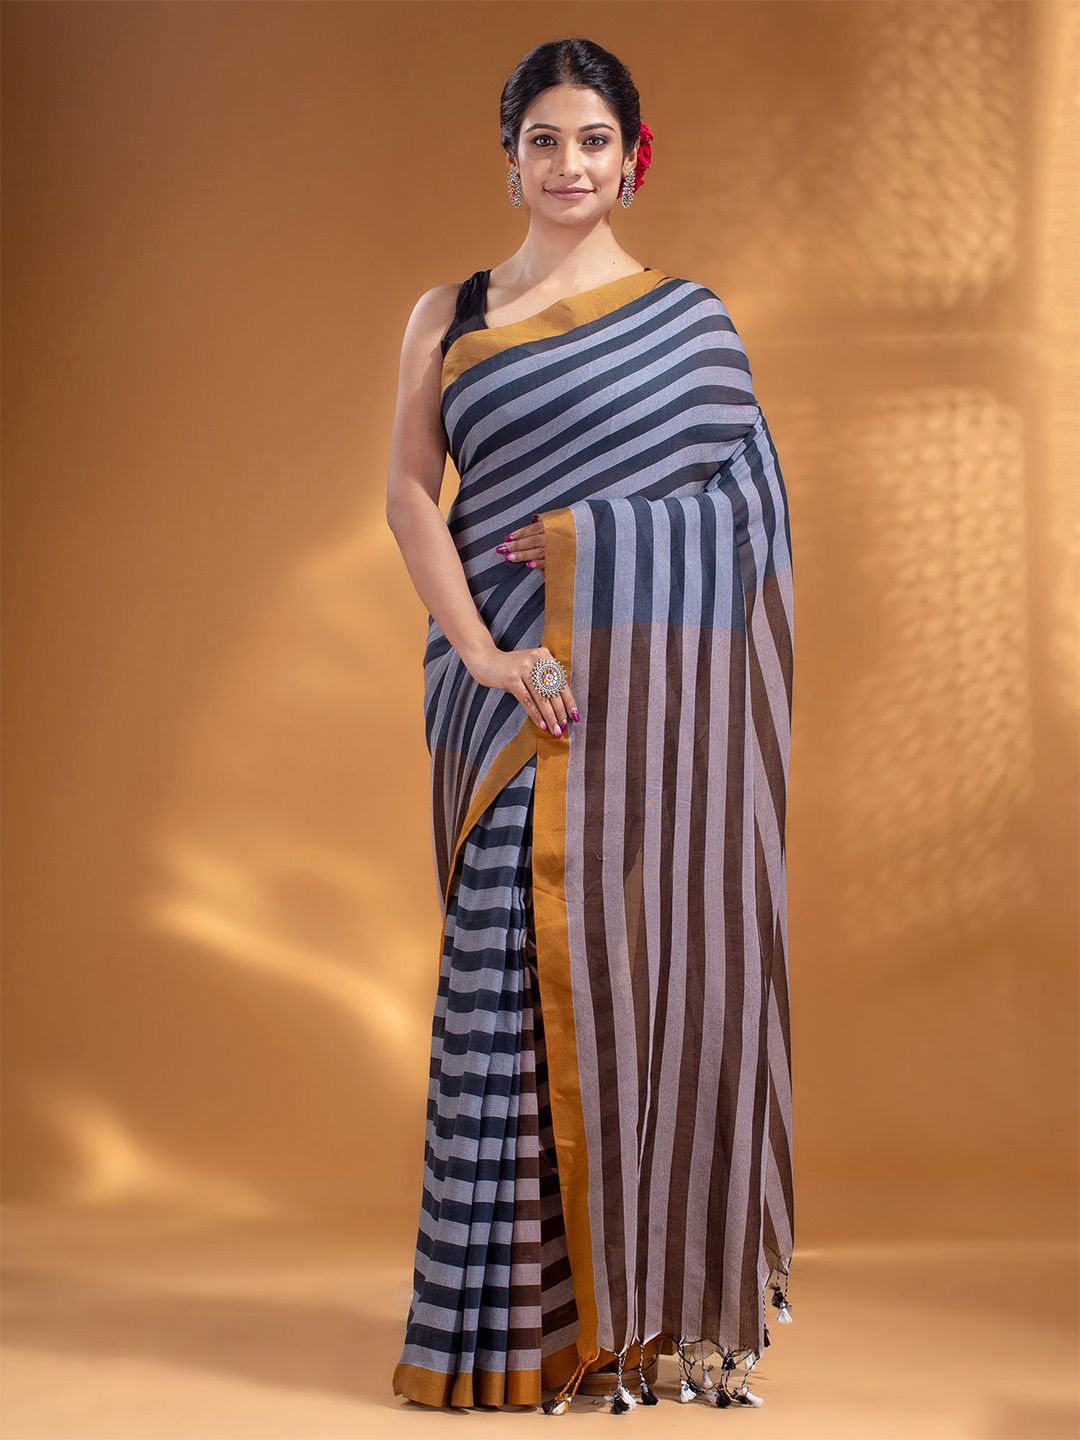 Arhi Black & White Woven Design Zari Pure Cotton Saree Price in India